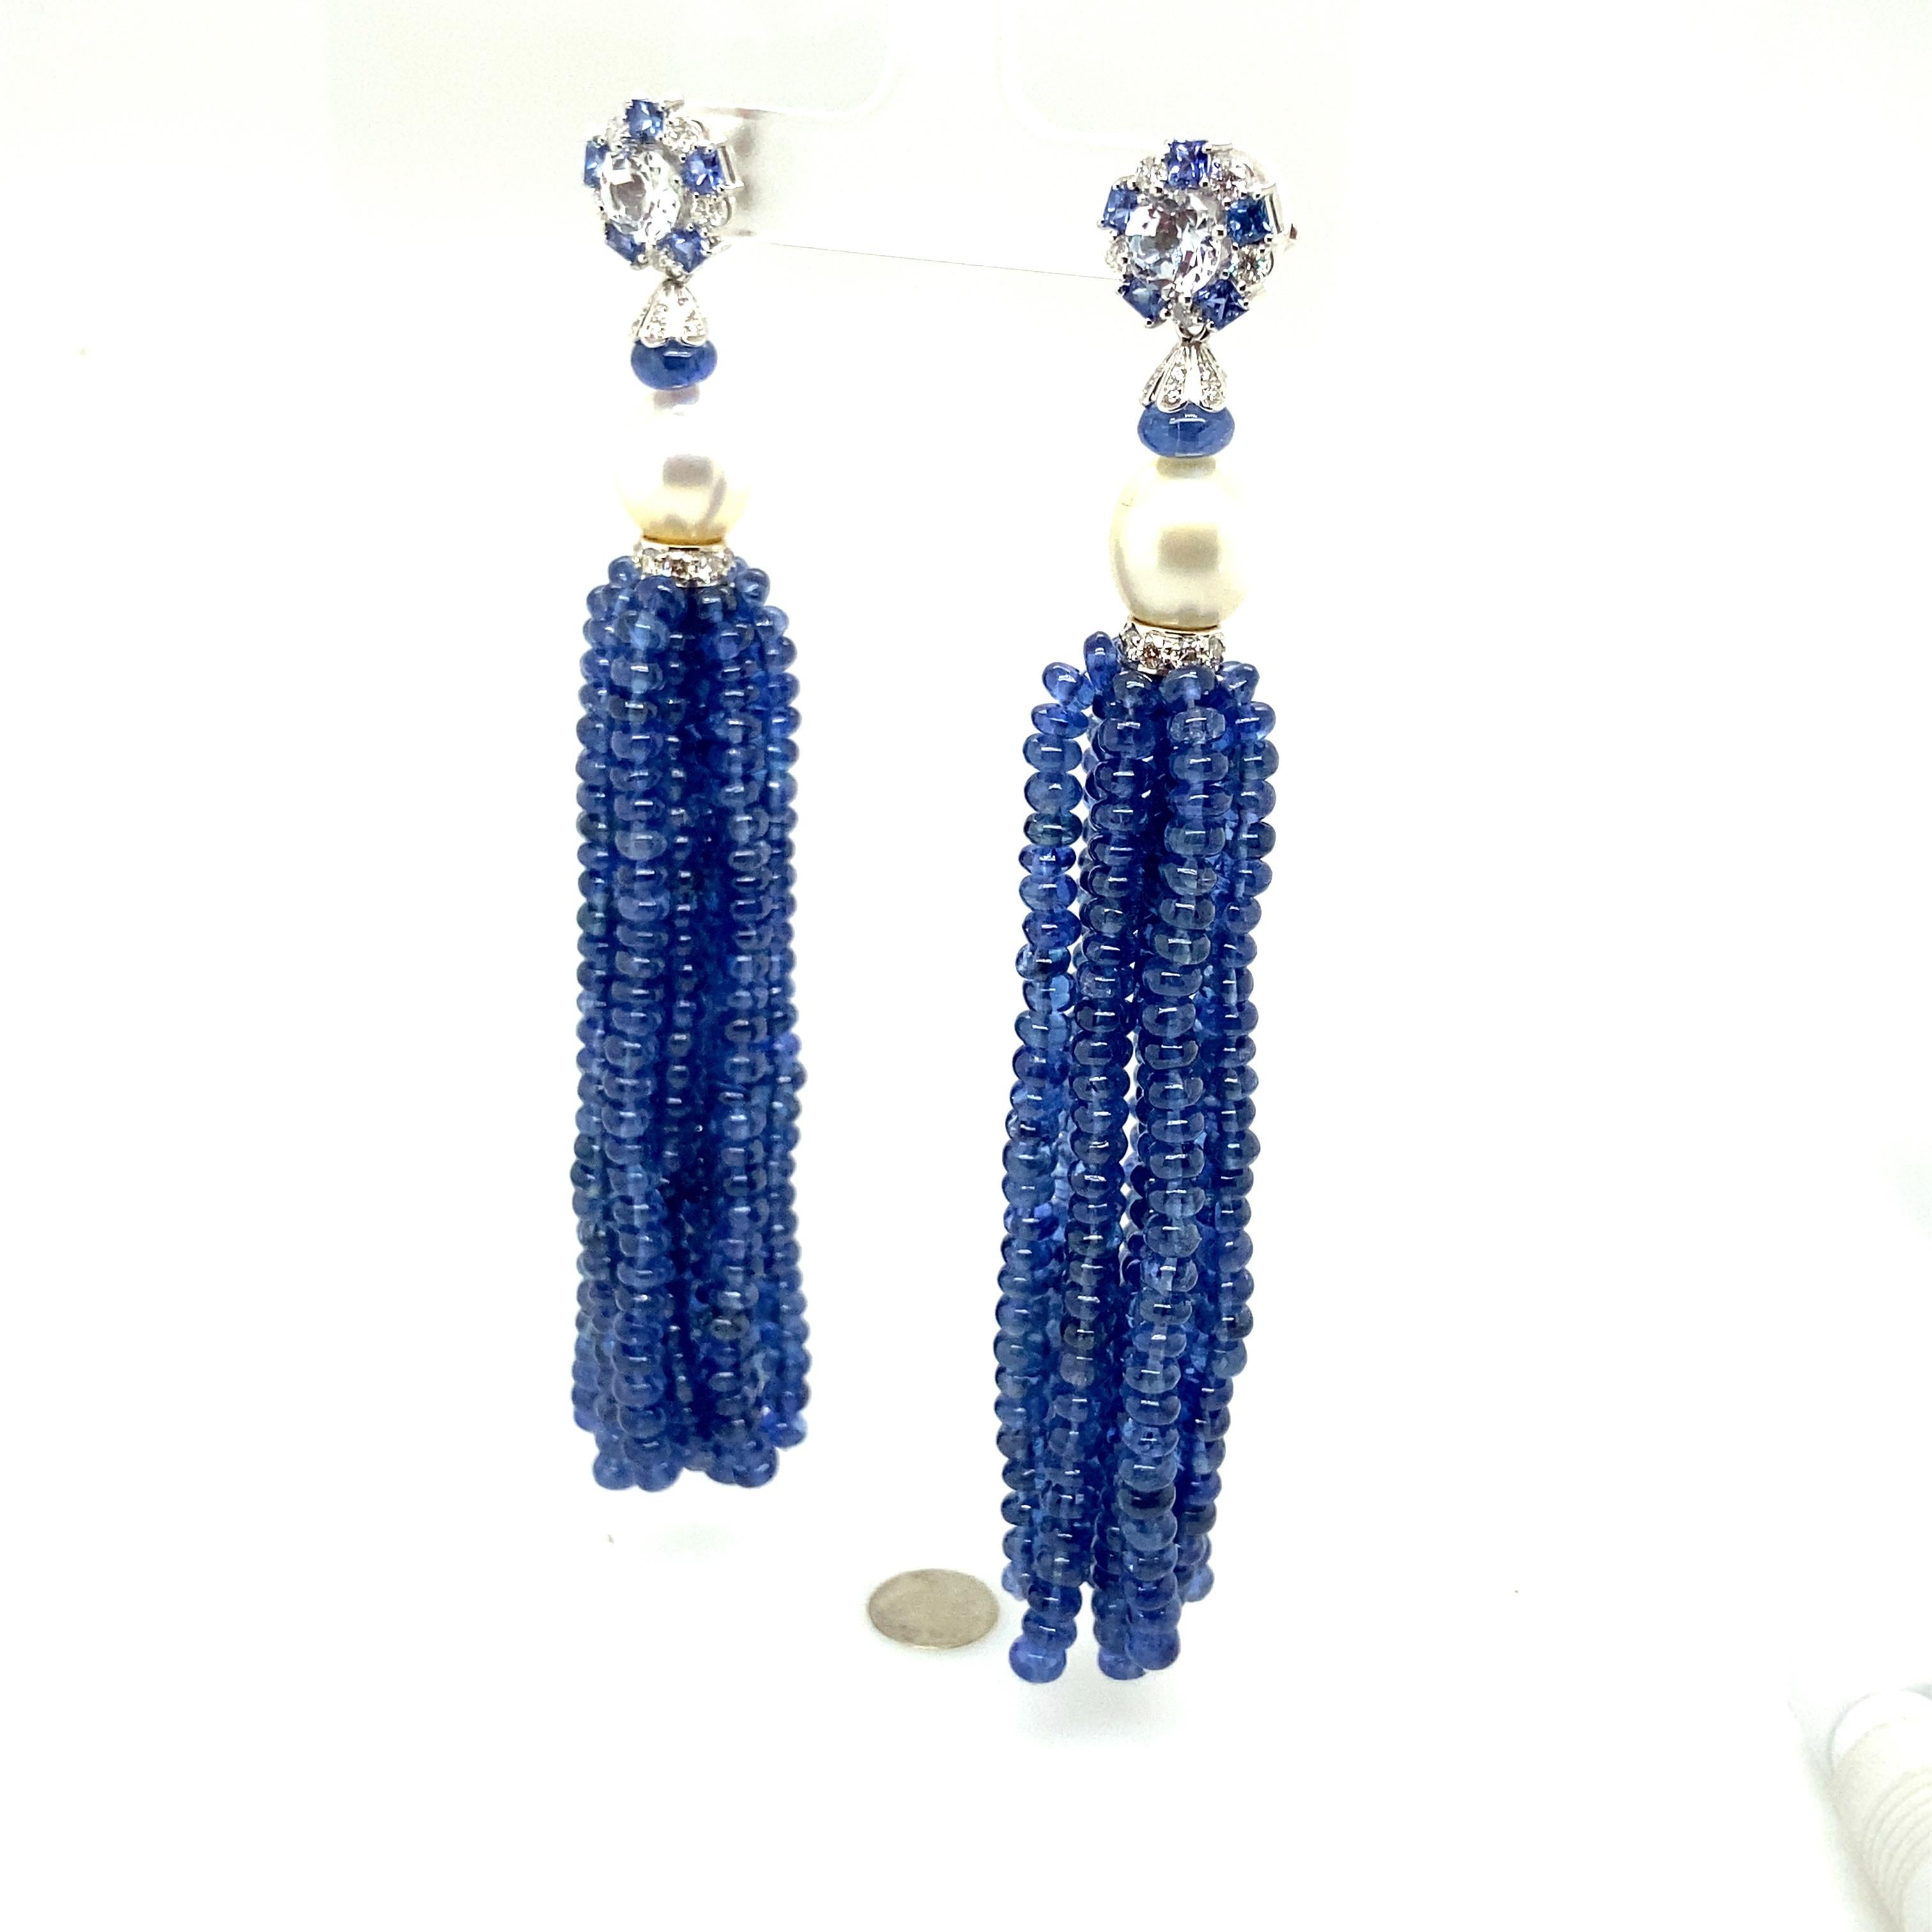 Natürliche lebhafte blaue Saphirperlen und Zuchtperlen Quasten-Diamant-Ohrringe:

Dieses wunderschöne Paar Ohrringe besteht aus natürlichen, lebhaften blauen Saphiren mit einem Gewicht von 228 Karat, die zu Quasten zusammengefügt sind, einem Paar